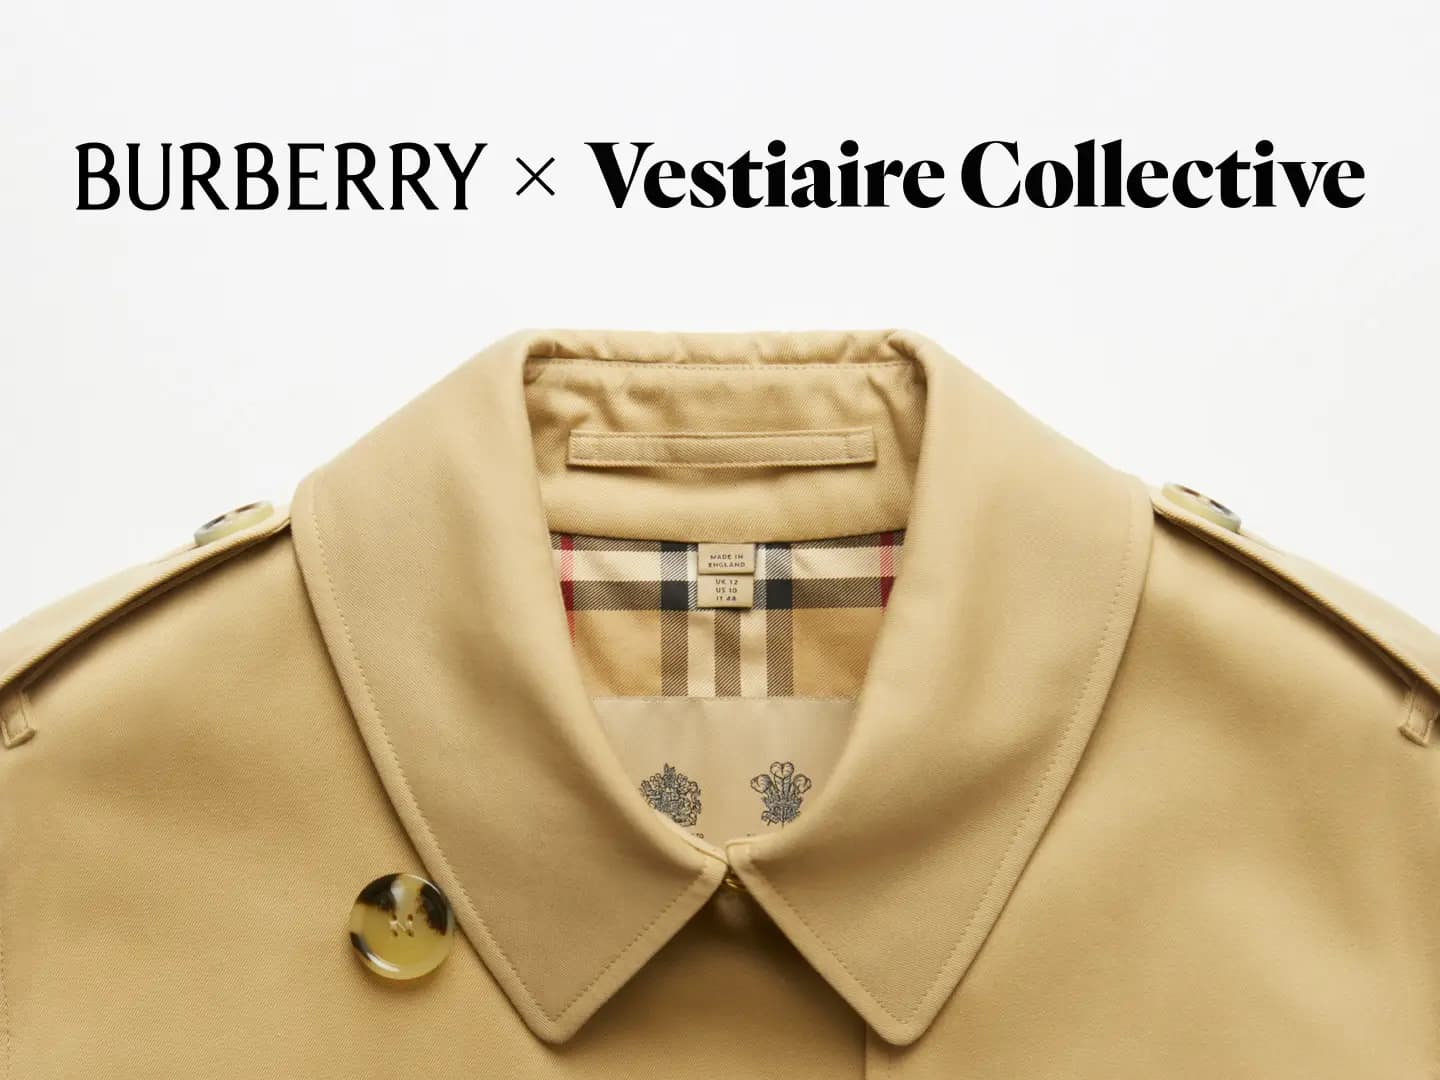 Louis Vuitton Coats for Men - Vestiaire Collective